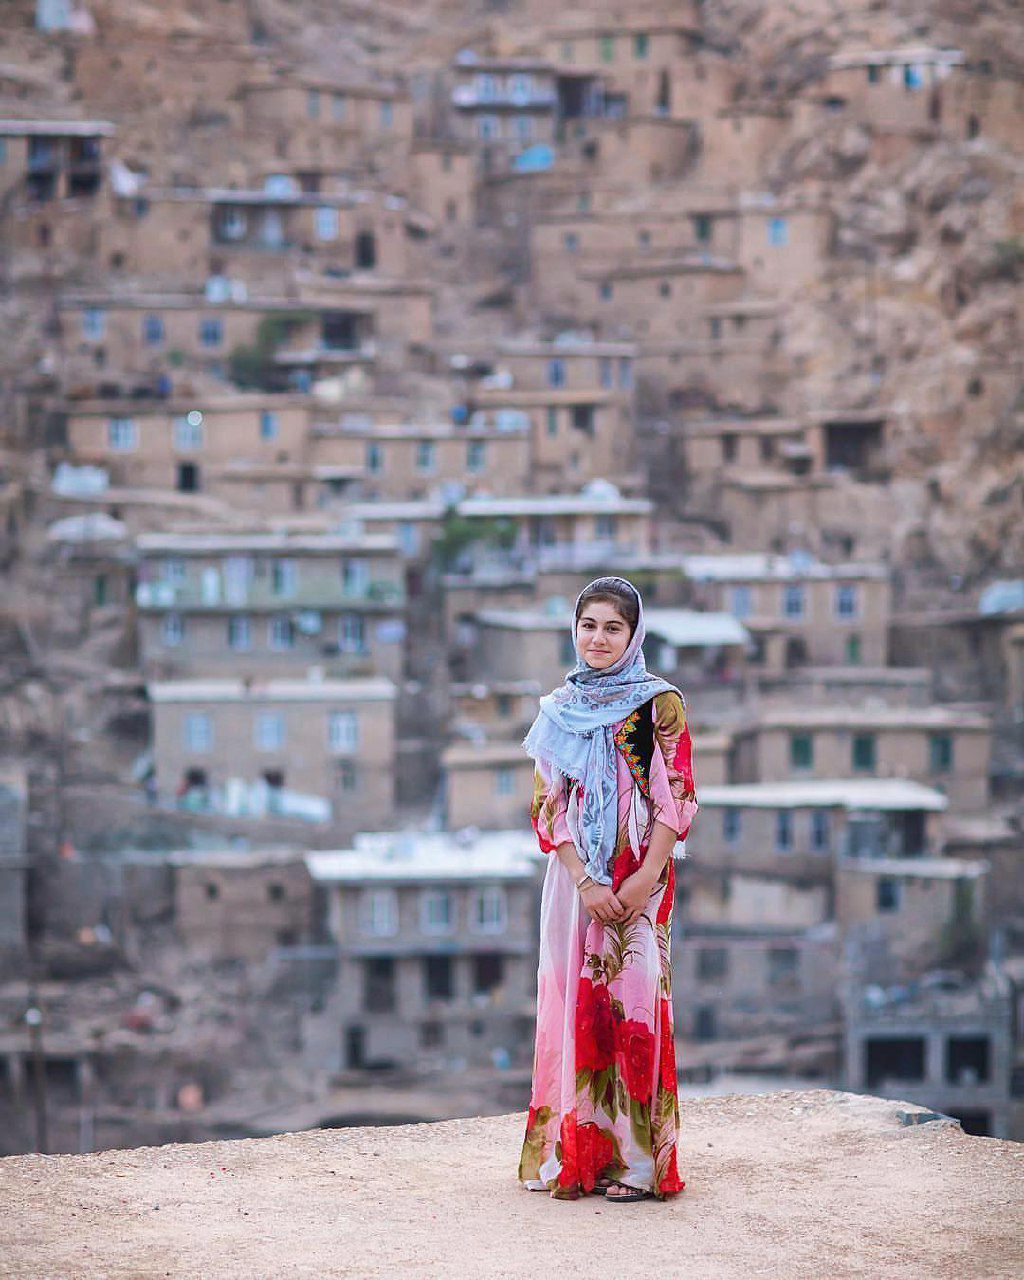 تور عکاسی کردستان